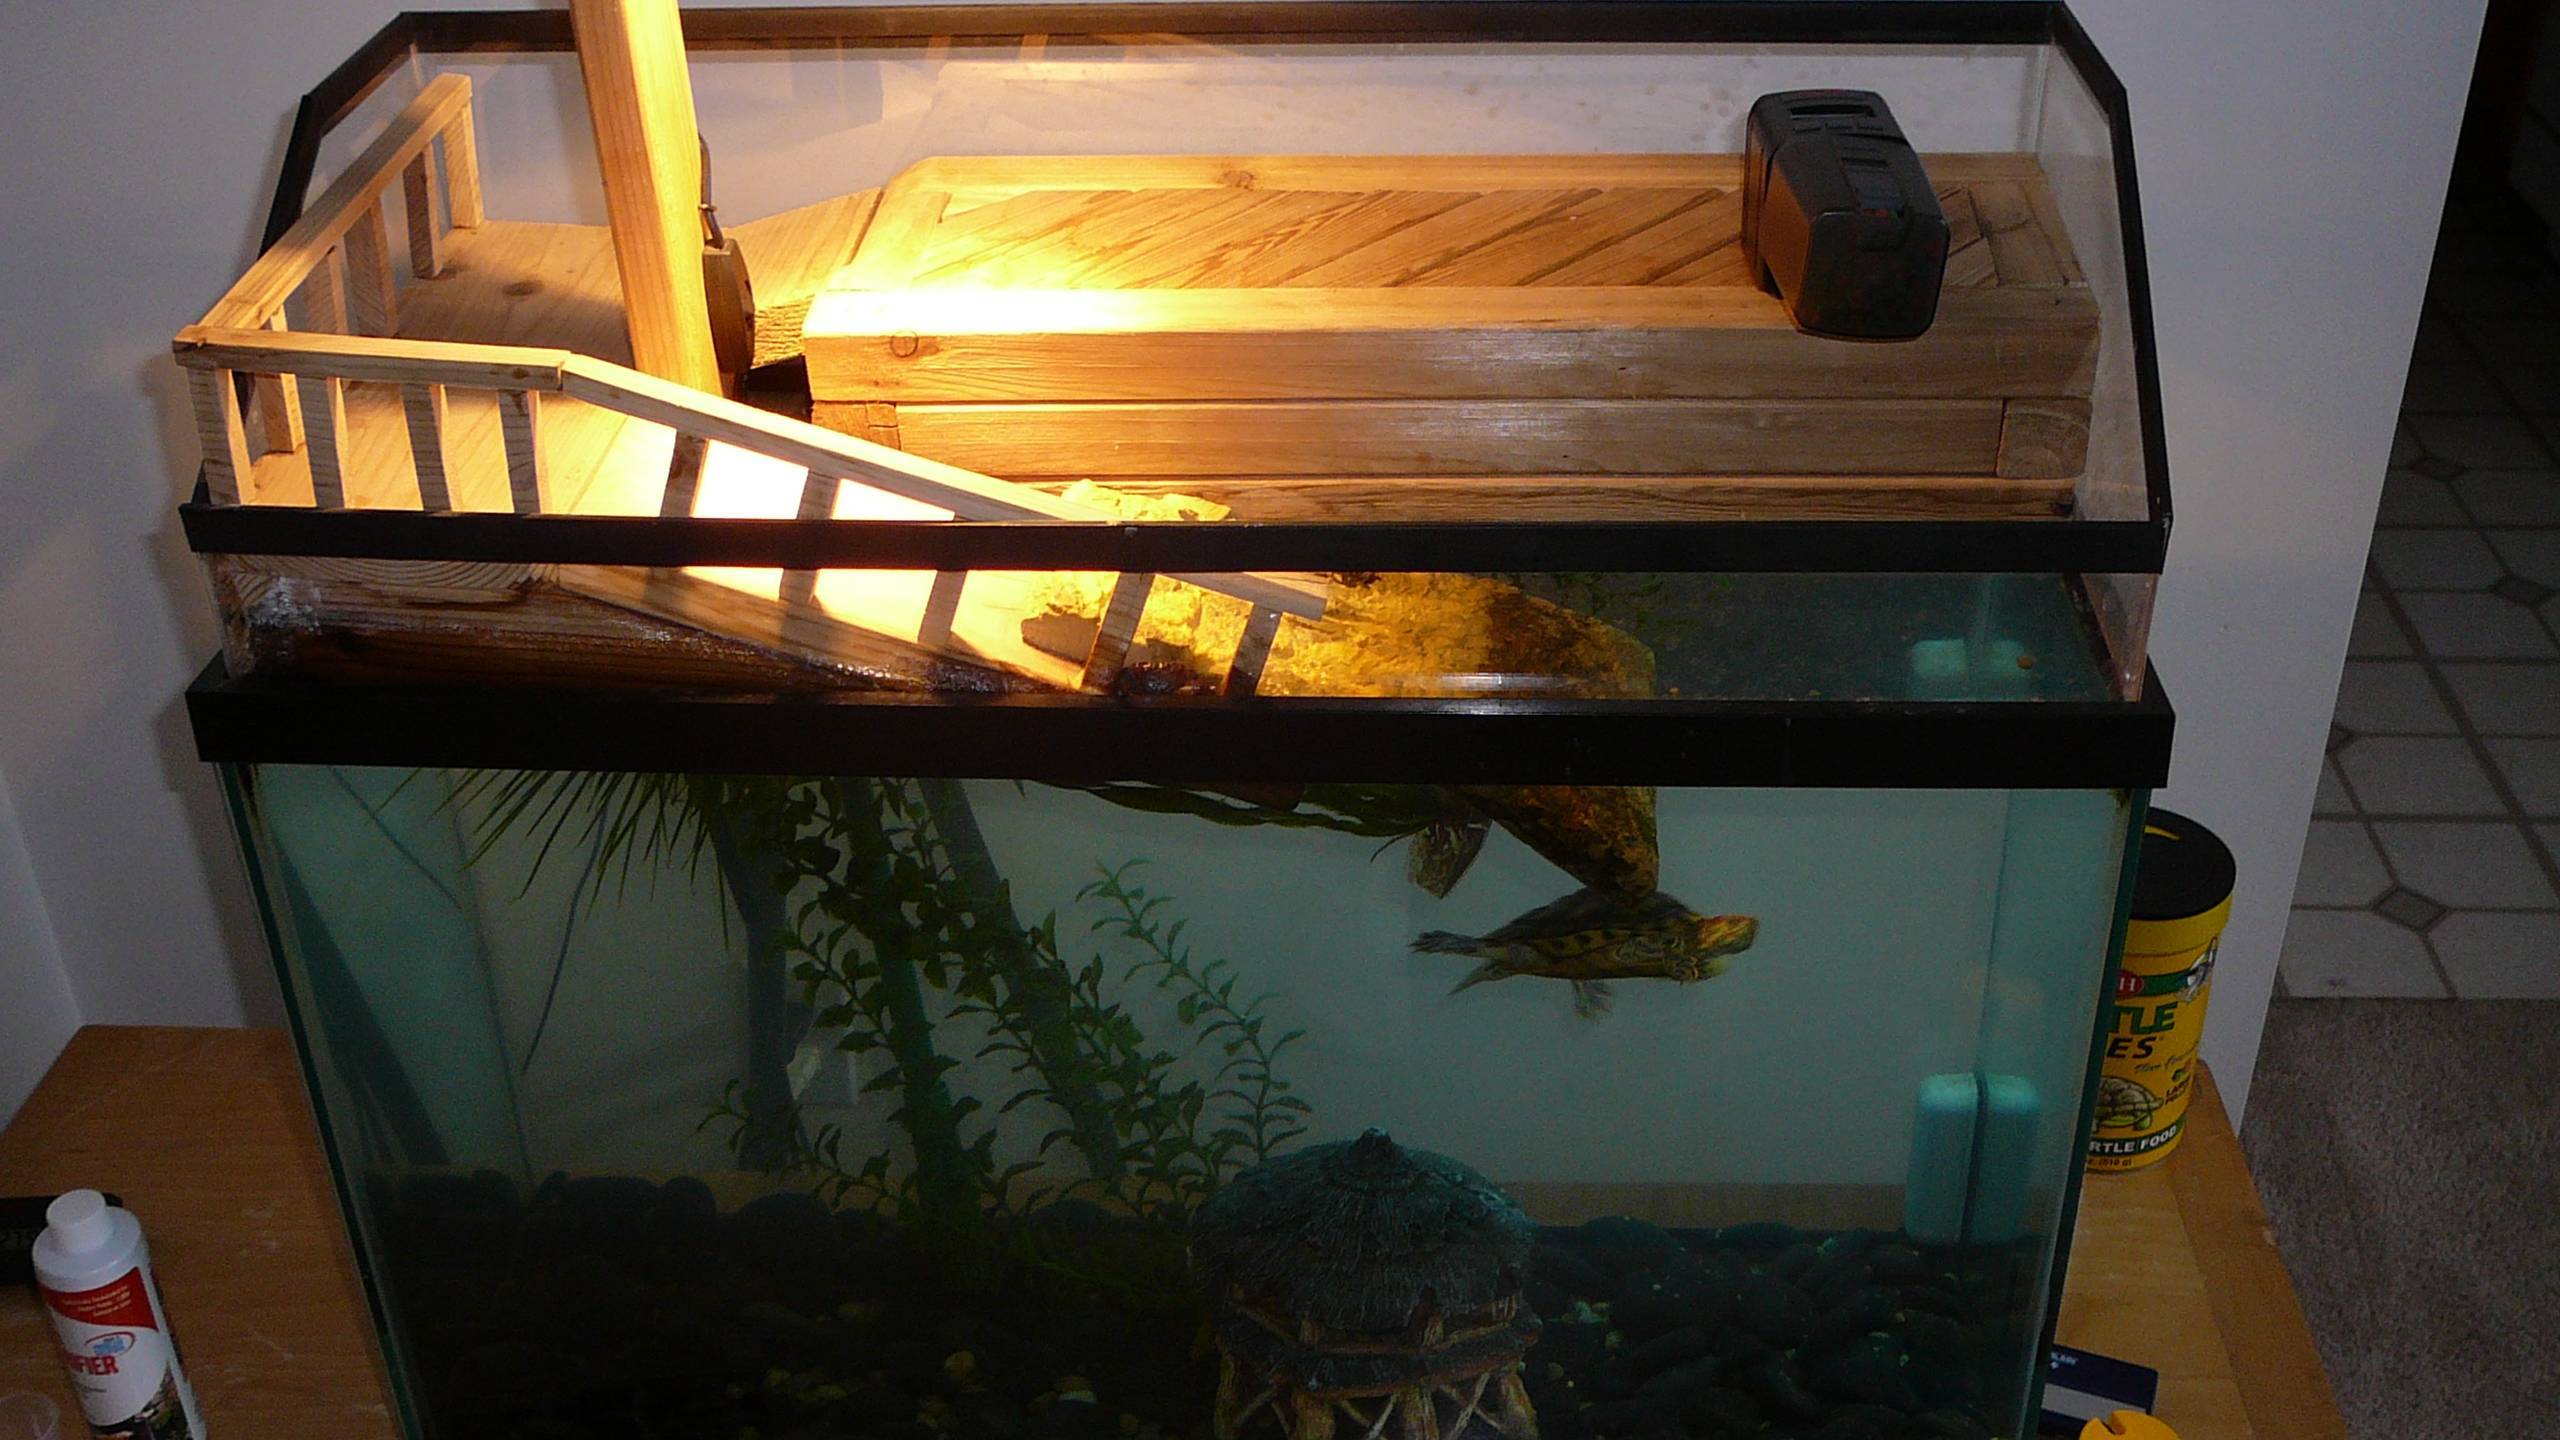 Как обустроить акватеррариум для водных черепах